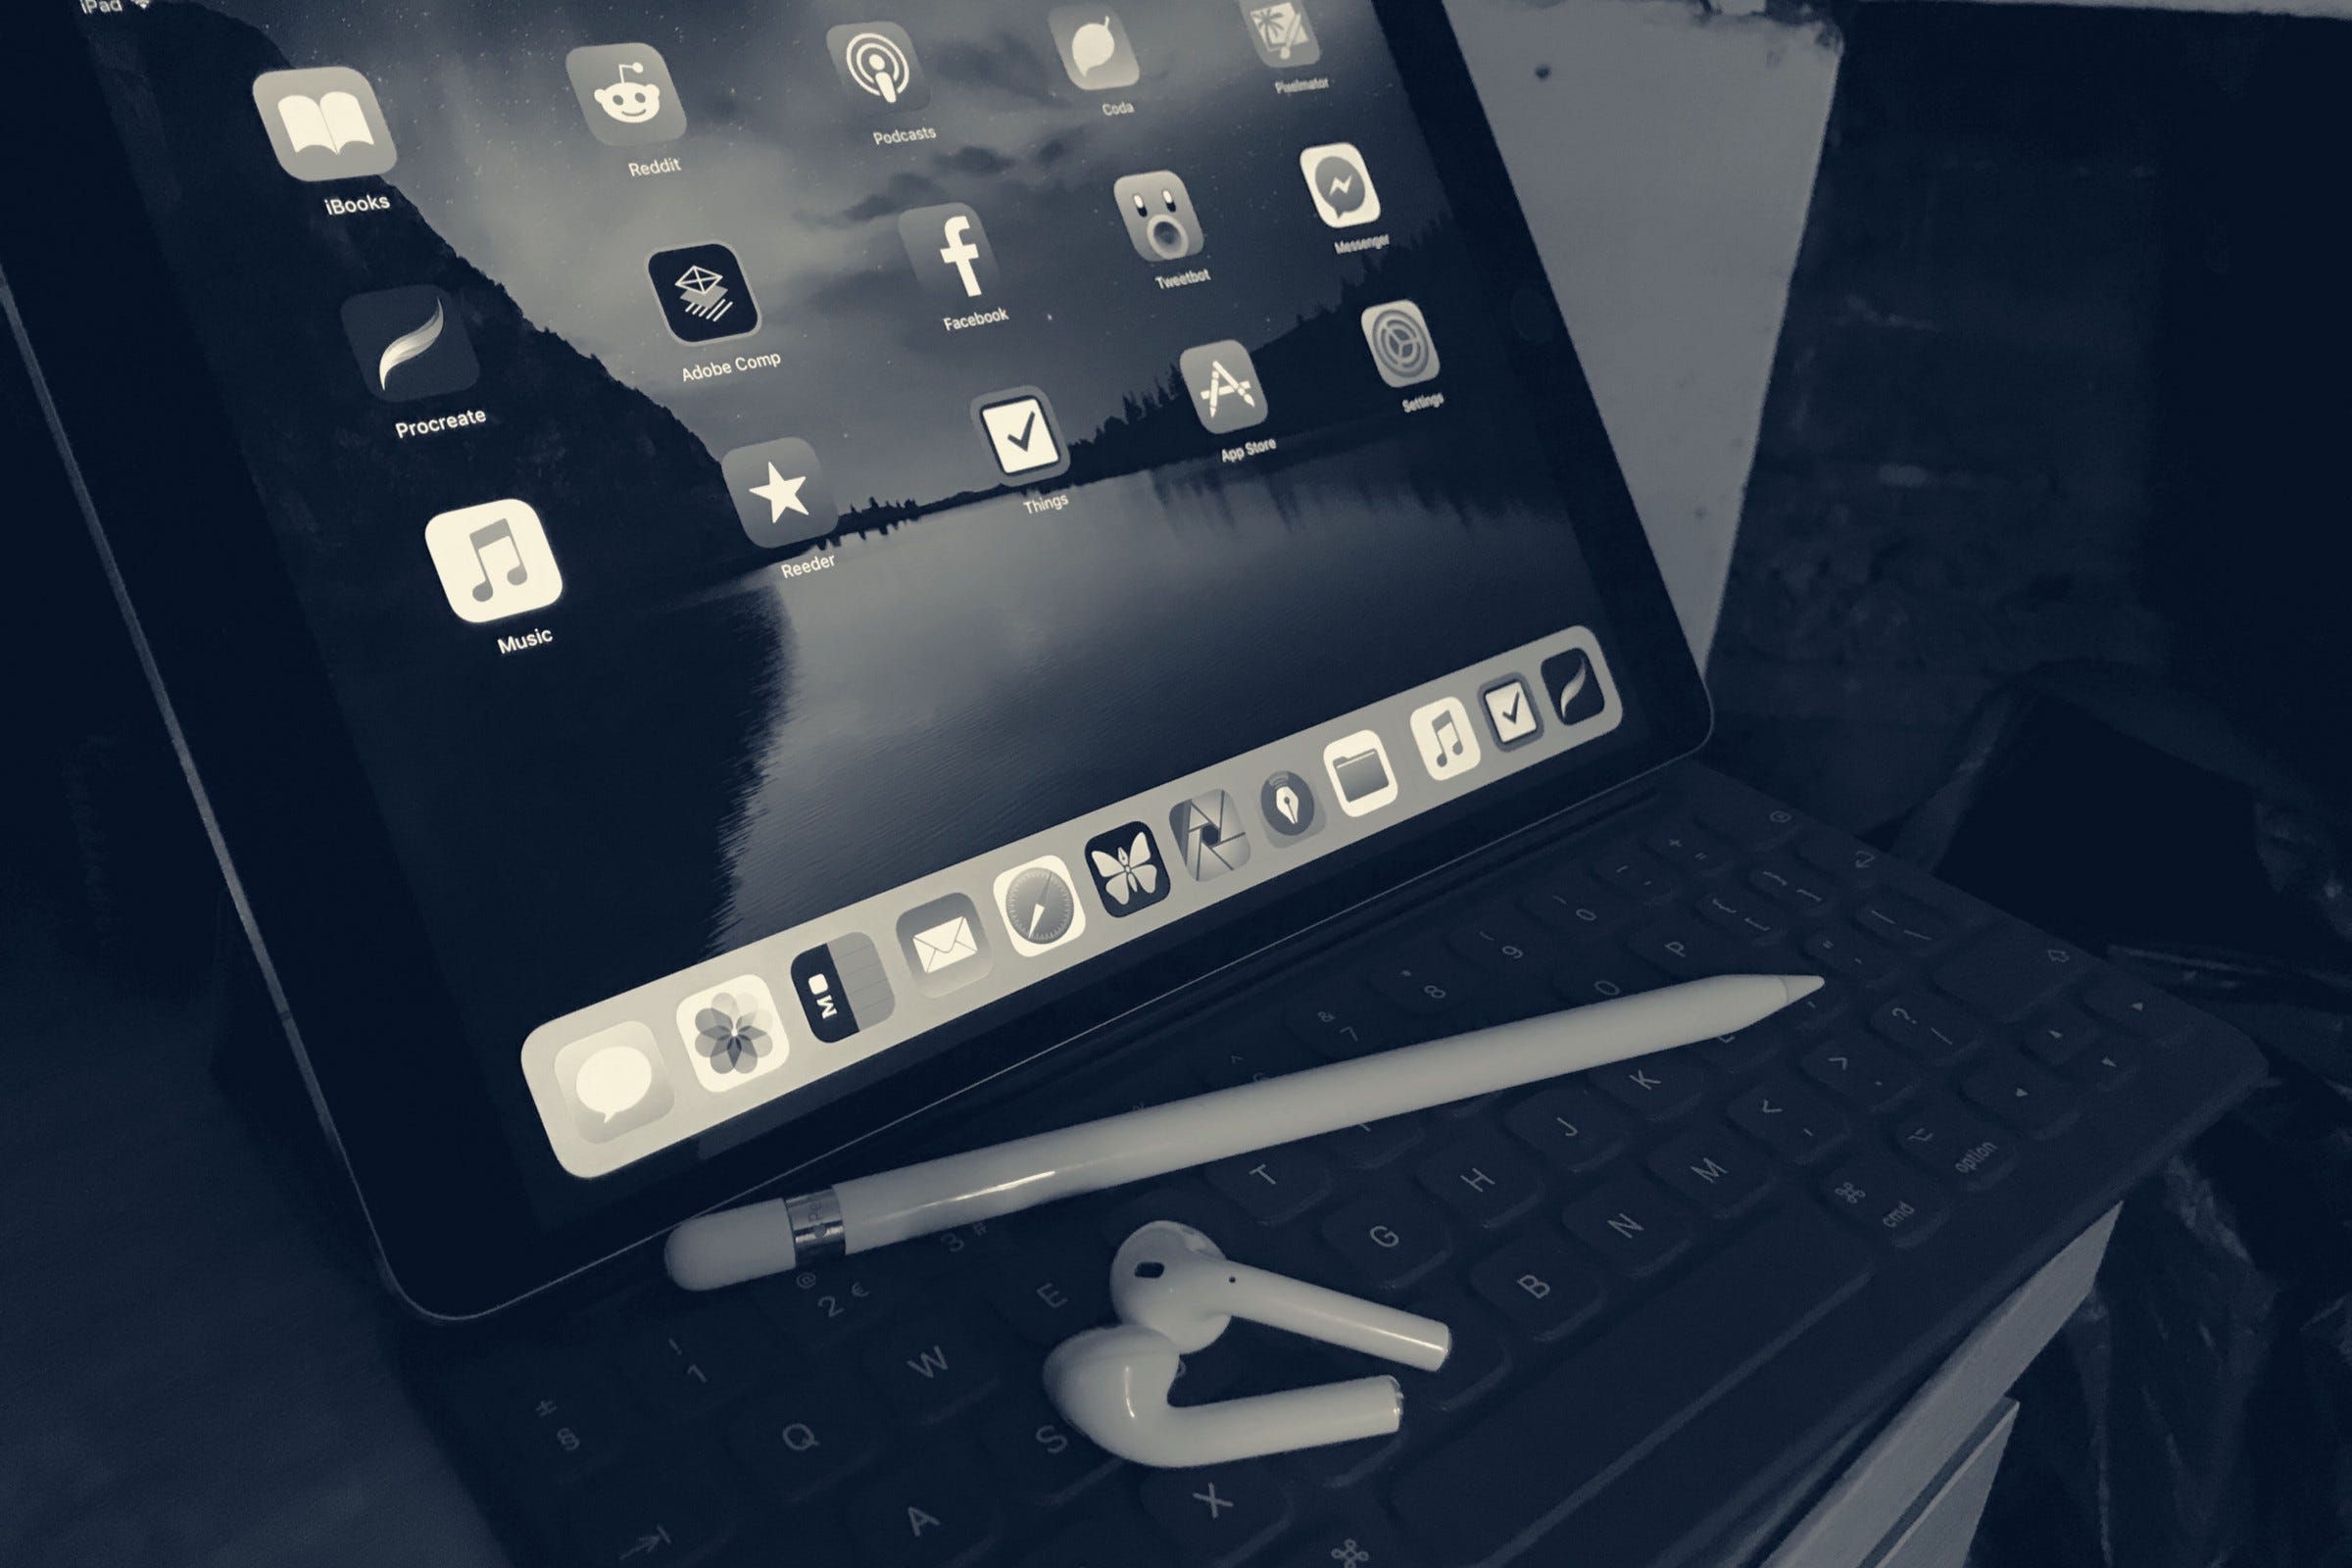 iPad Pro 12.9” 2015 v. 2020 — Basic Apple Guy